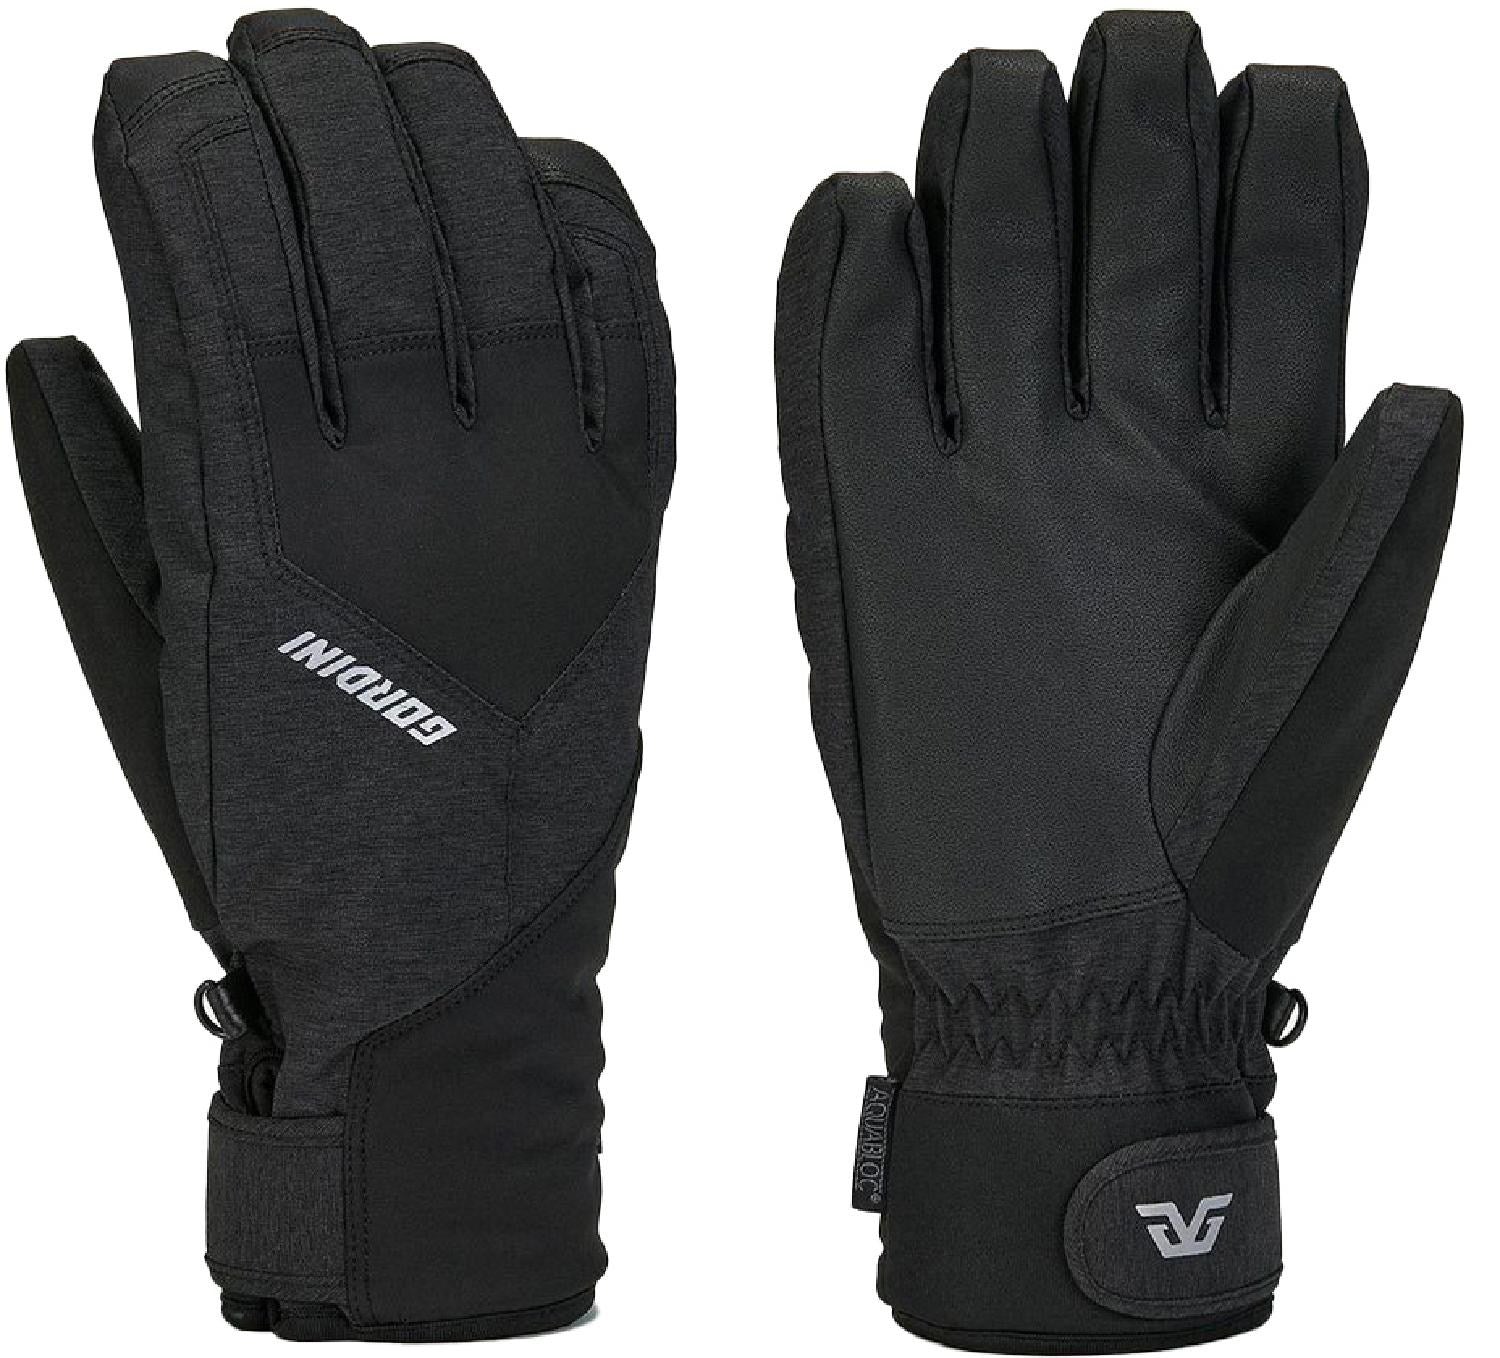 Gordini Aquabloc Men's Glove - Black